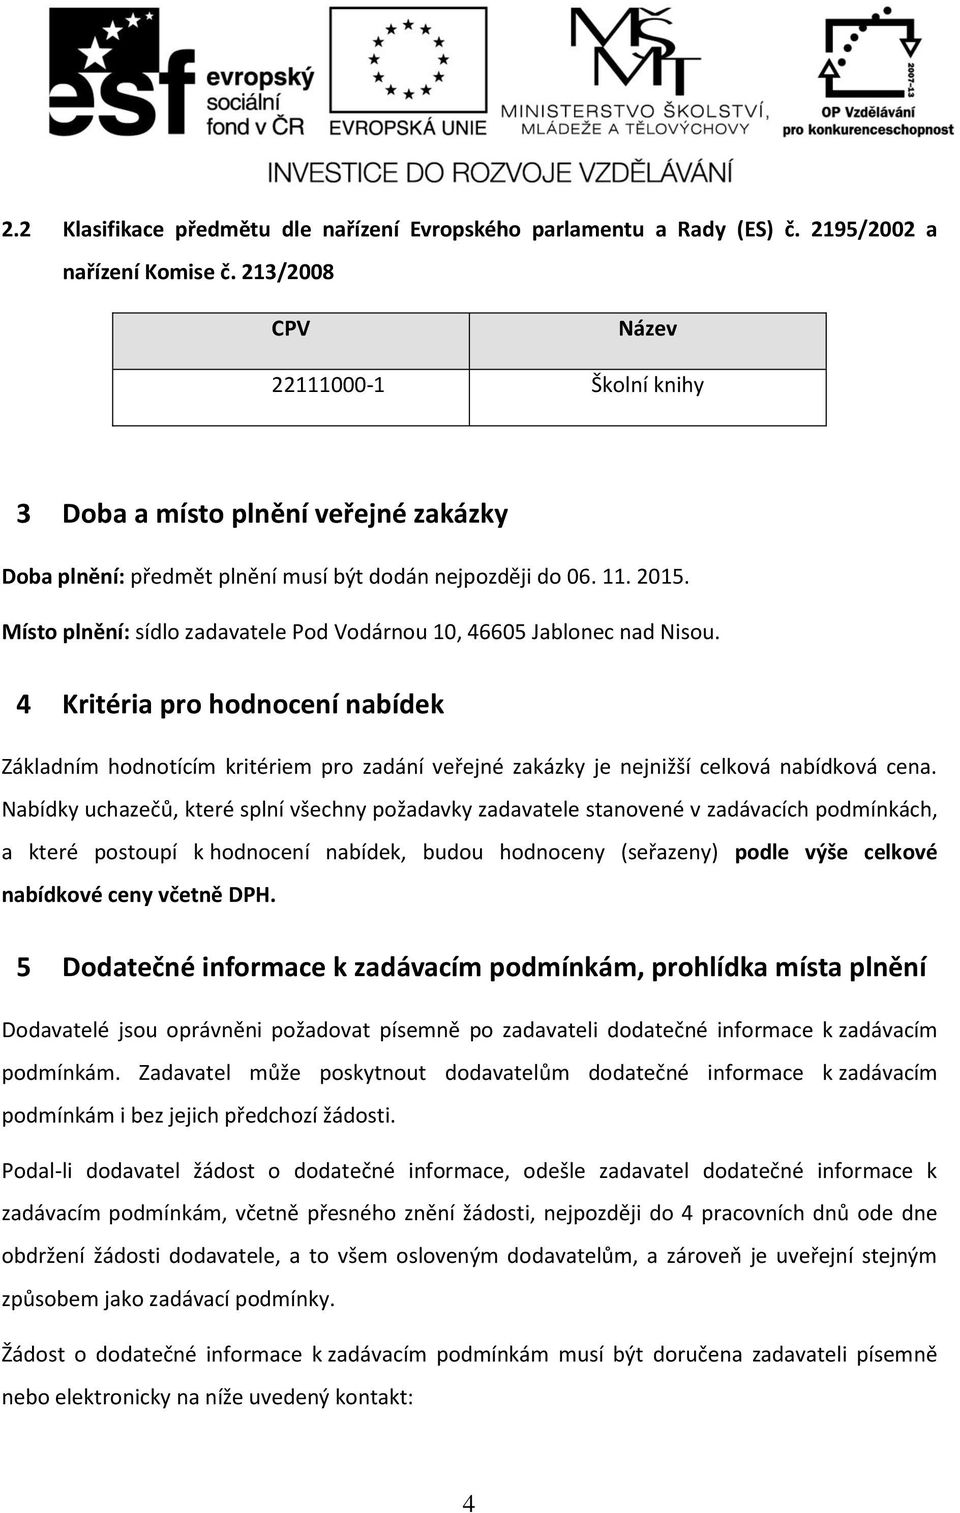 Místo plnění: sídlo zadavatele Pod Vodárnou 10, 46605 Jablonec nad Nisou. 4 Kritéria pro hodnocení nabídek Základním hodnotícím kritériem pro zadání veřejné zakázky je nejnižší celková nabídková cena.